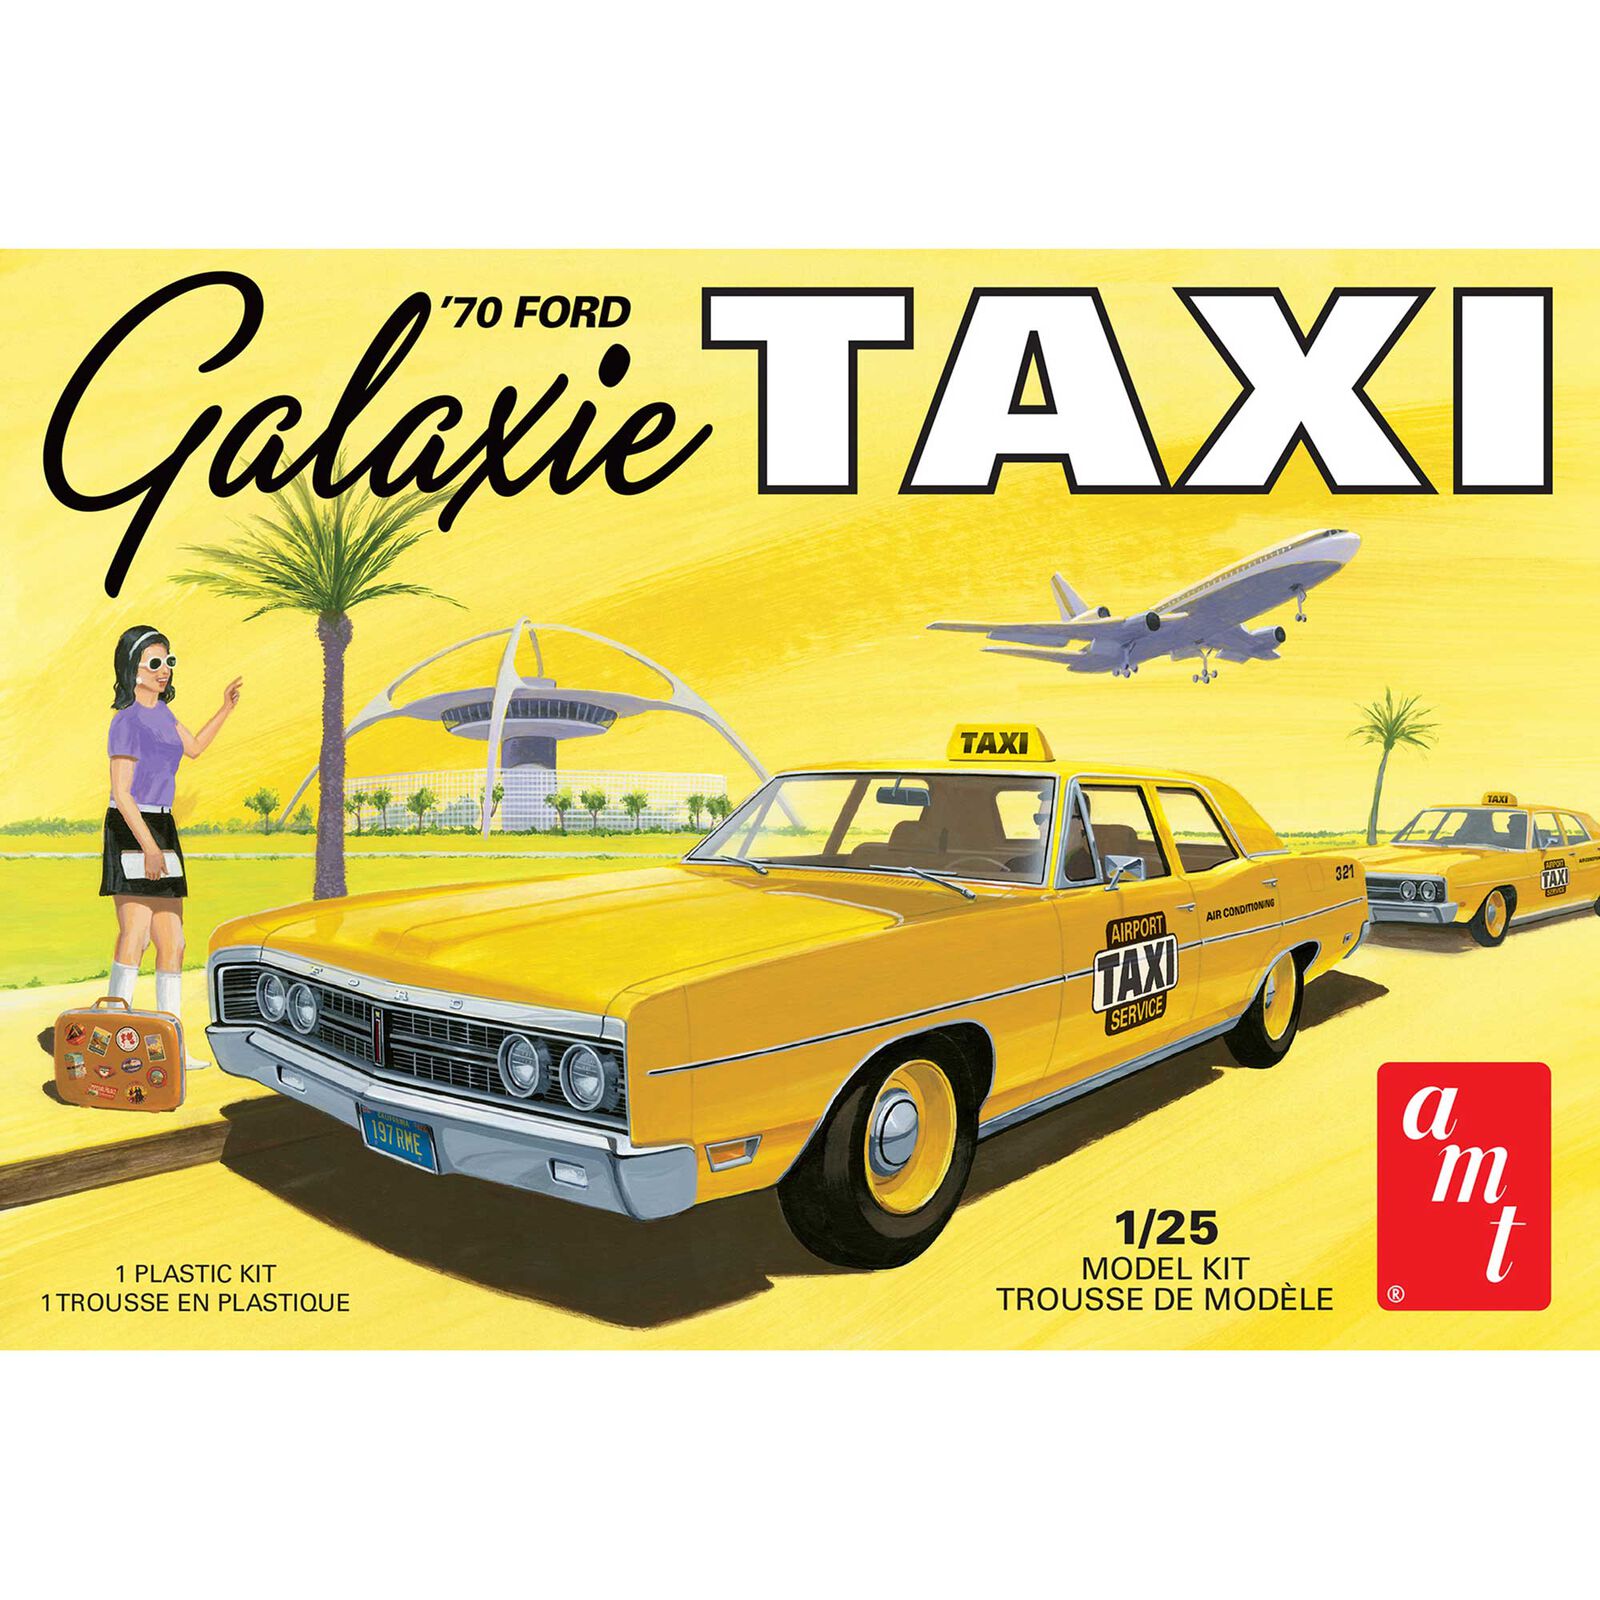 1970 Ford Galaxie Taxi